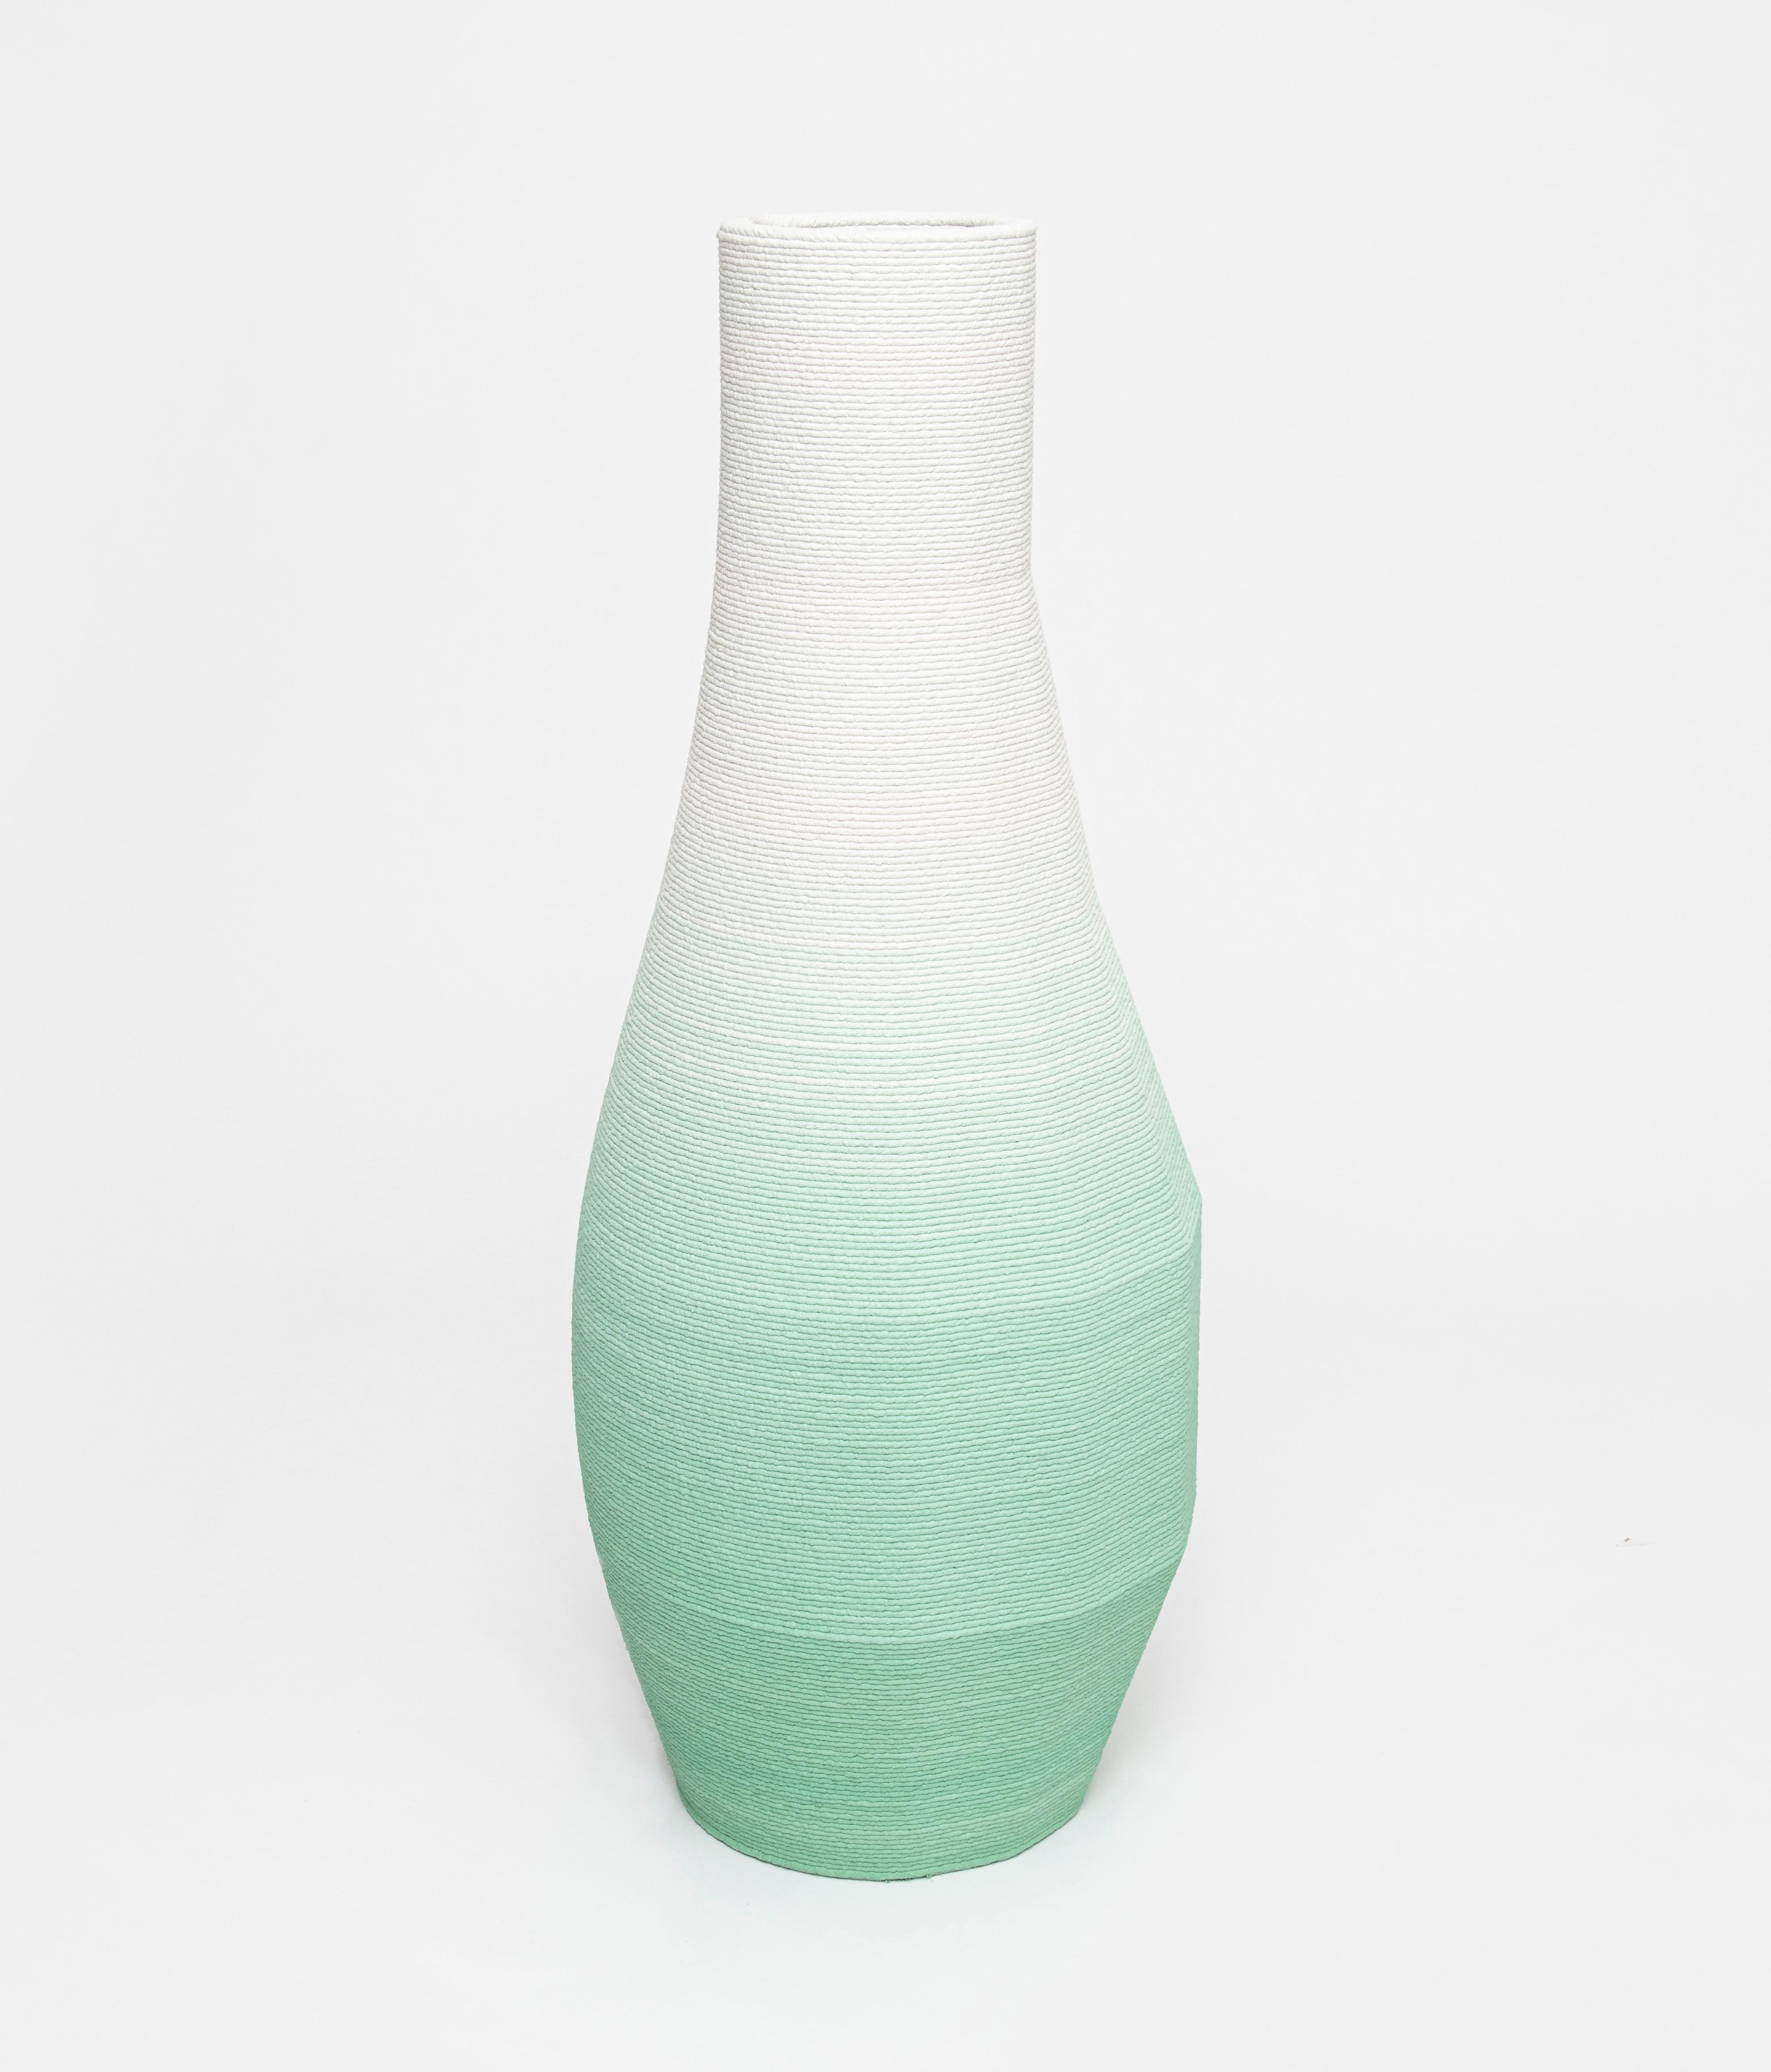 Contemporary Large Concrete Gradient Vase by Philipp Aduatz For Sale